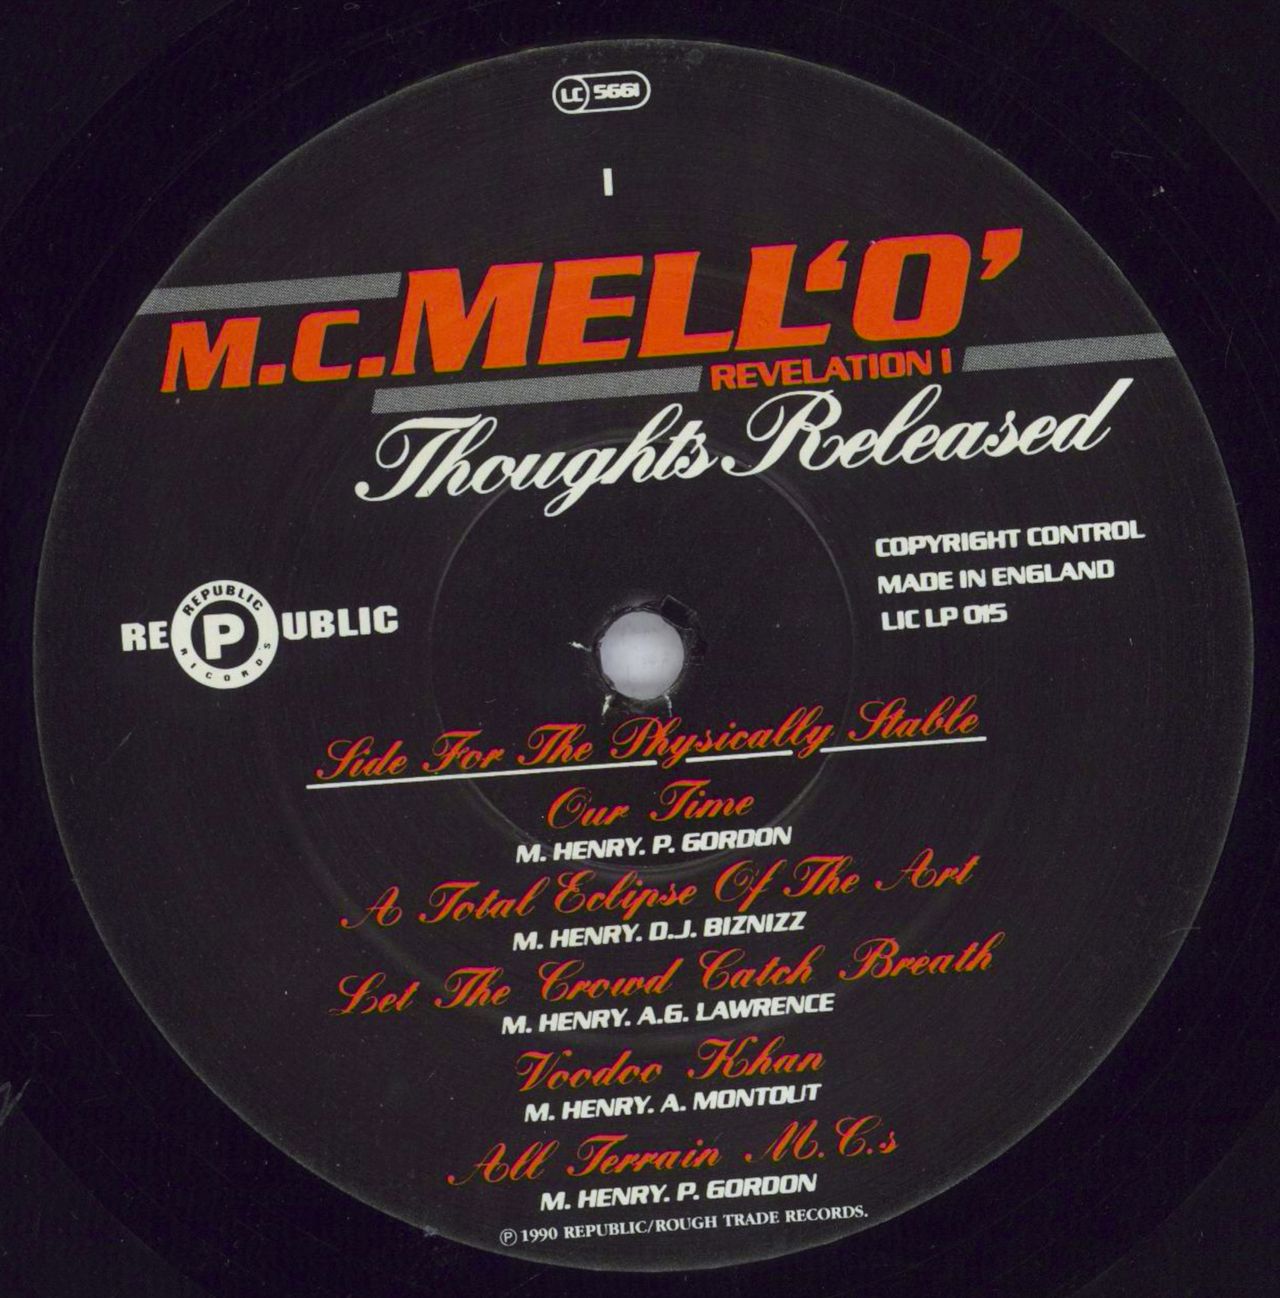 MC Mell'O' Thoughts Released (Revelation I) UK Vinyl LP